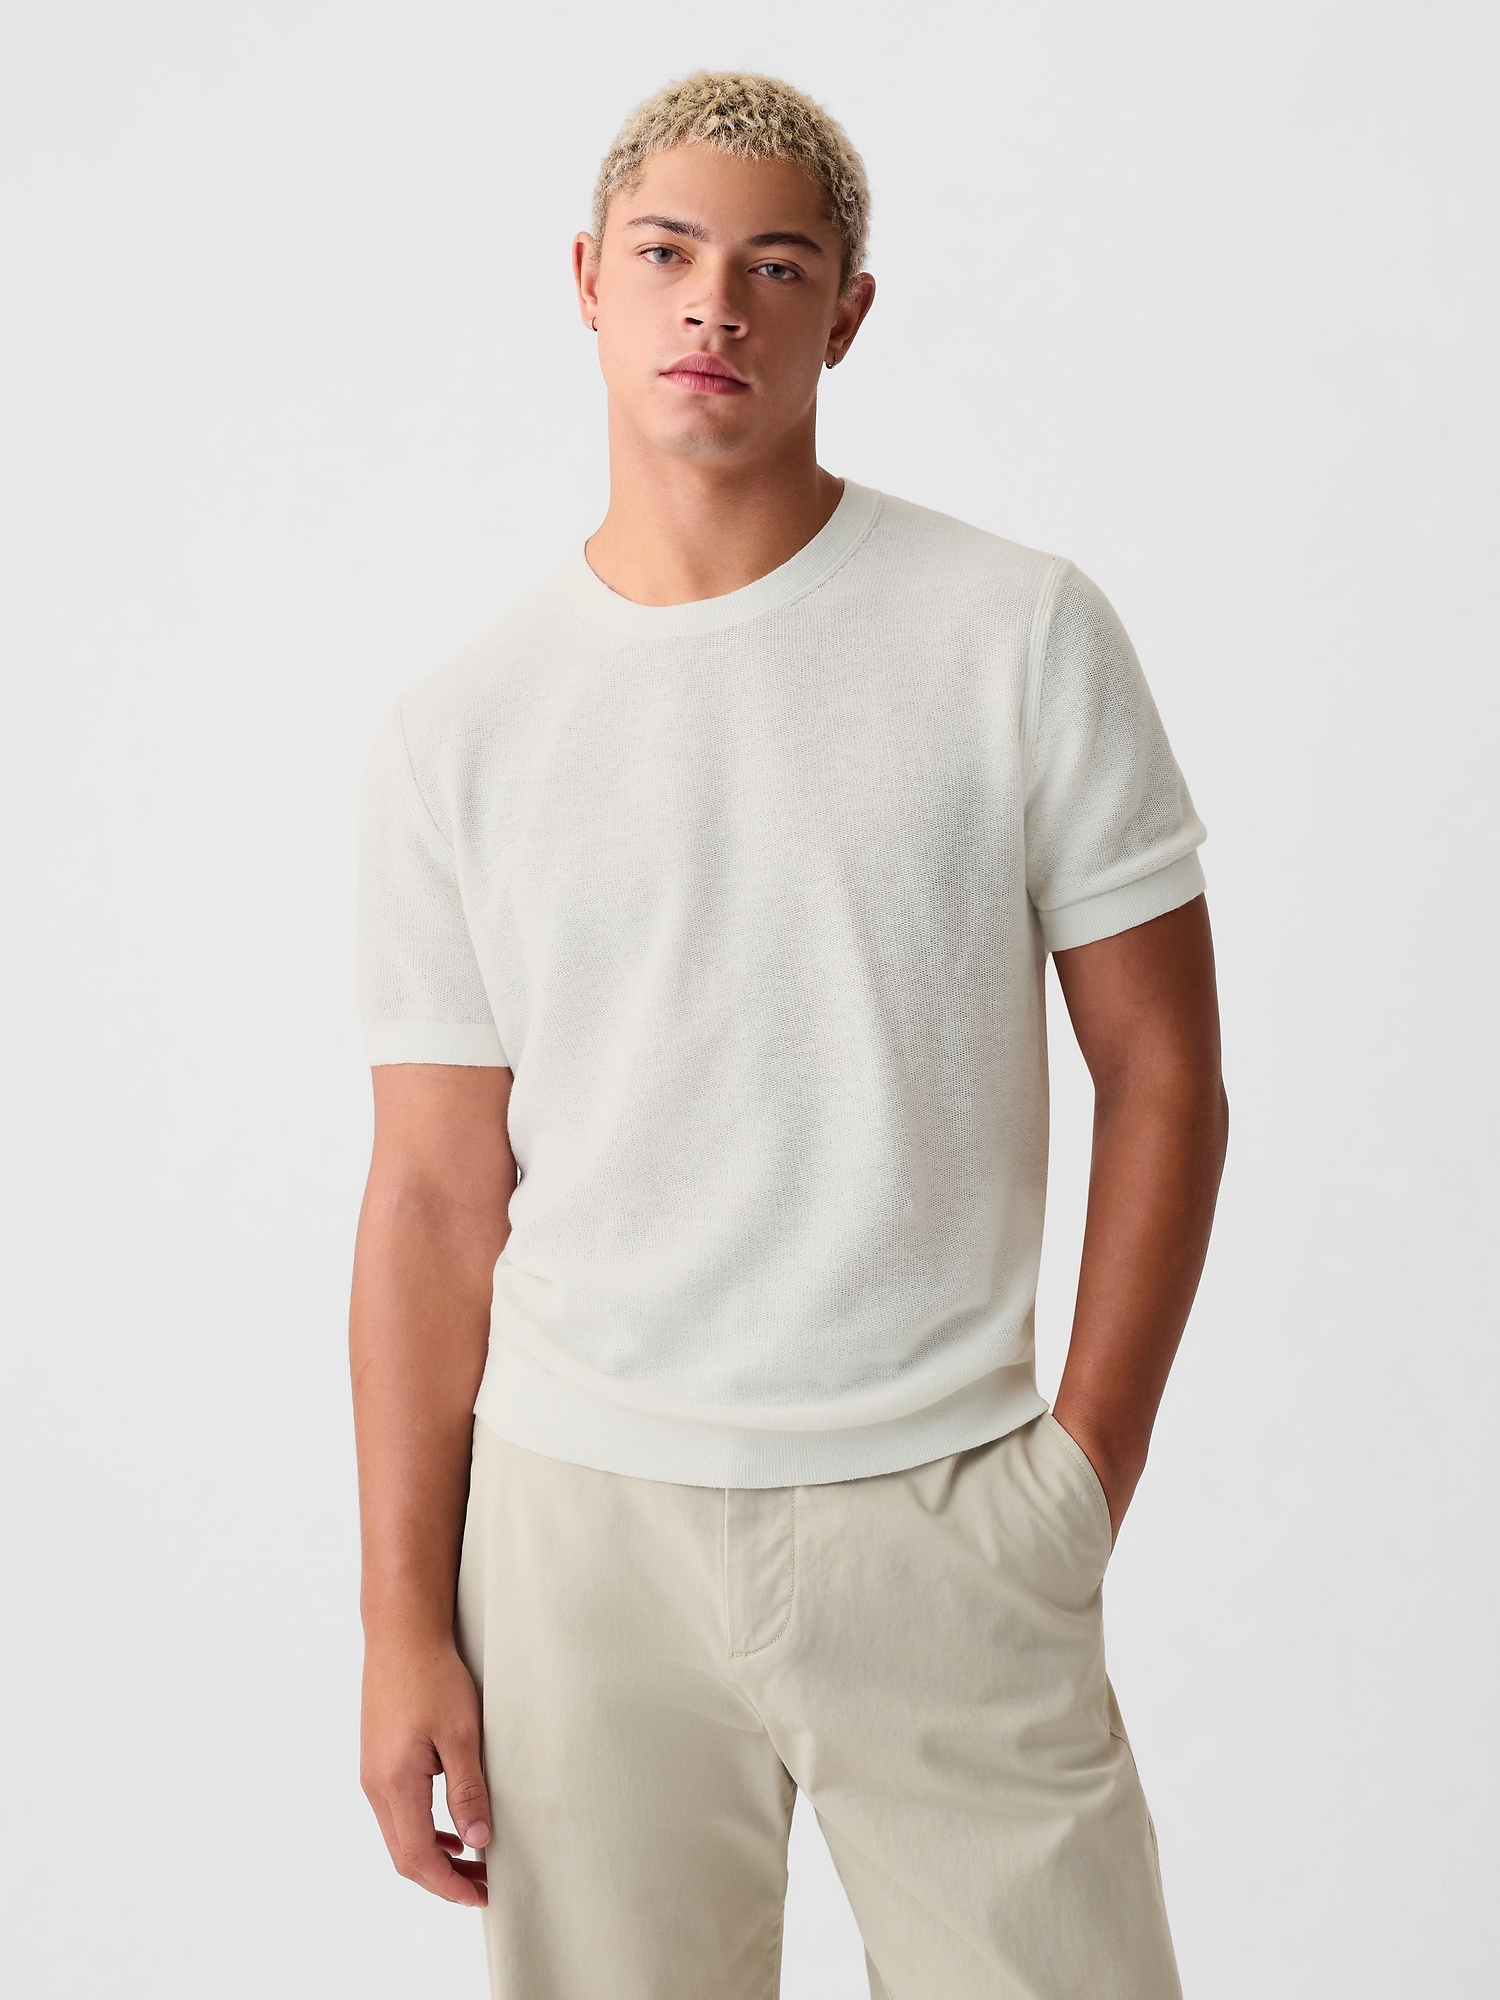 Linen-Blend Textured Sweater Shirt